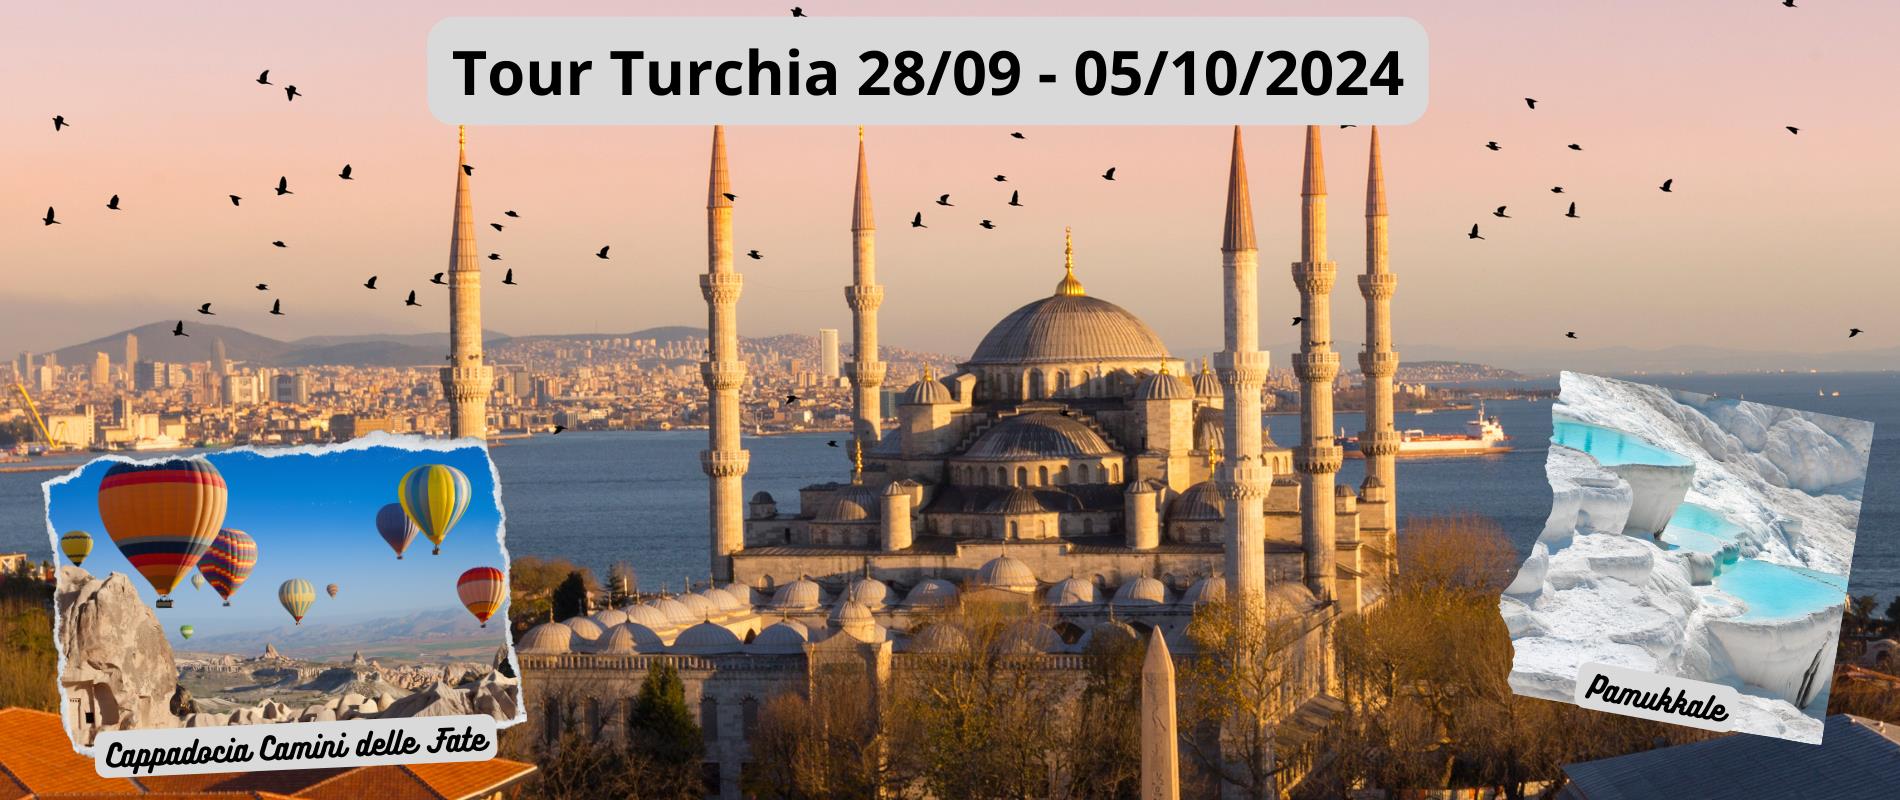 Tour Turchia: Istanbul, Cappadocia e i Camini delle Fate